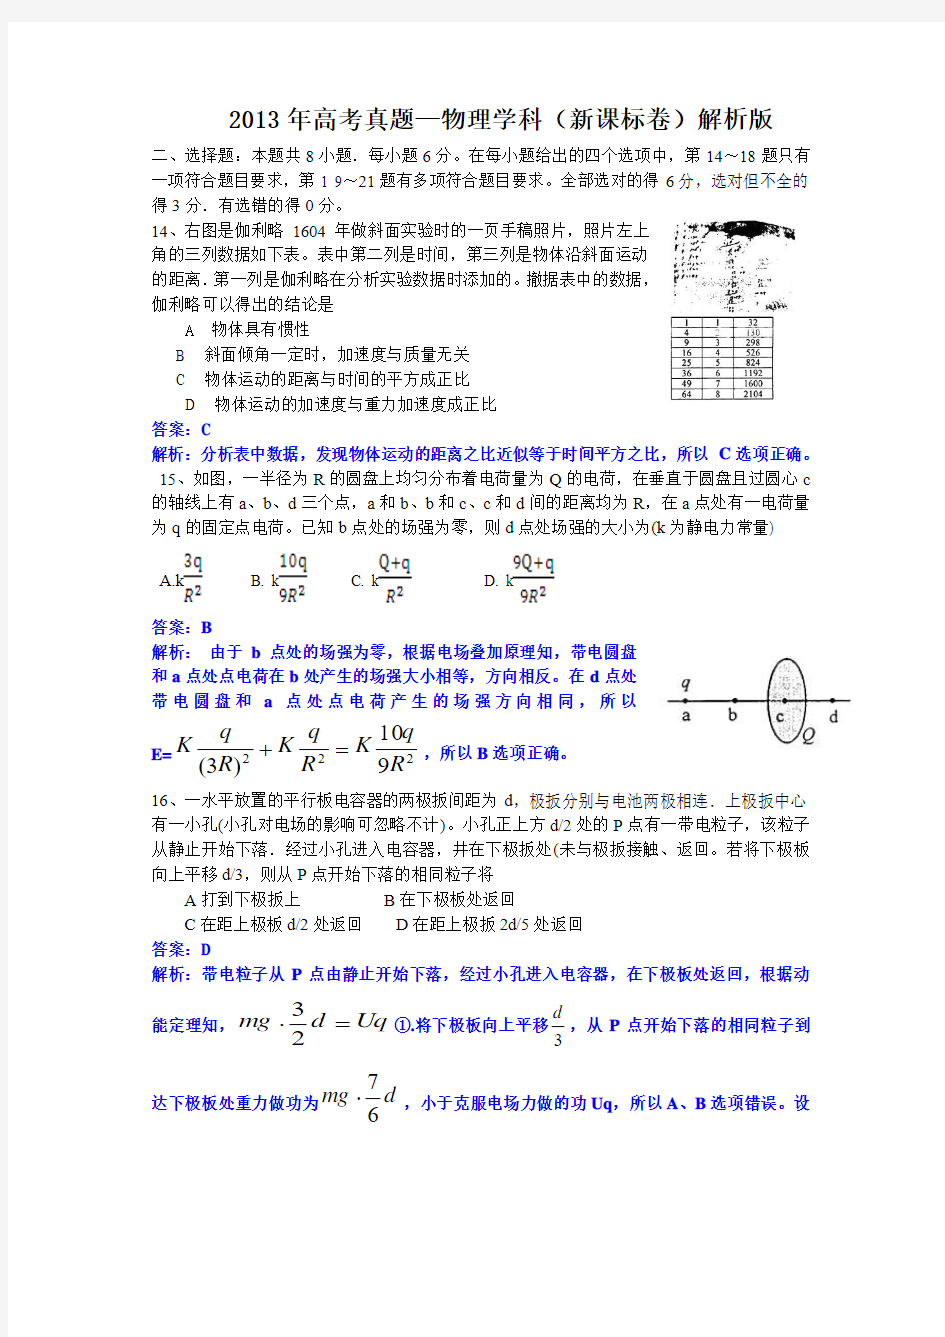 2013年高考真题—物理学科(新课标卷)解析word版